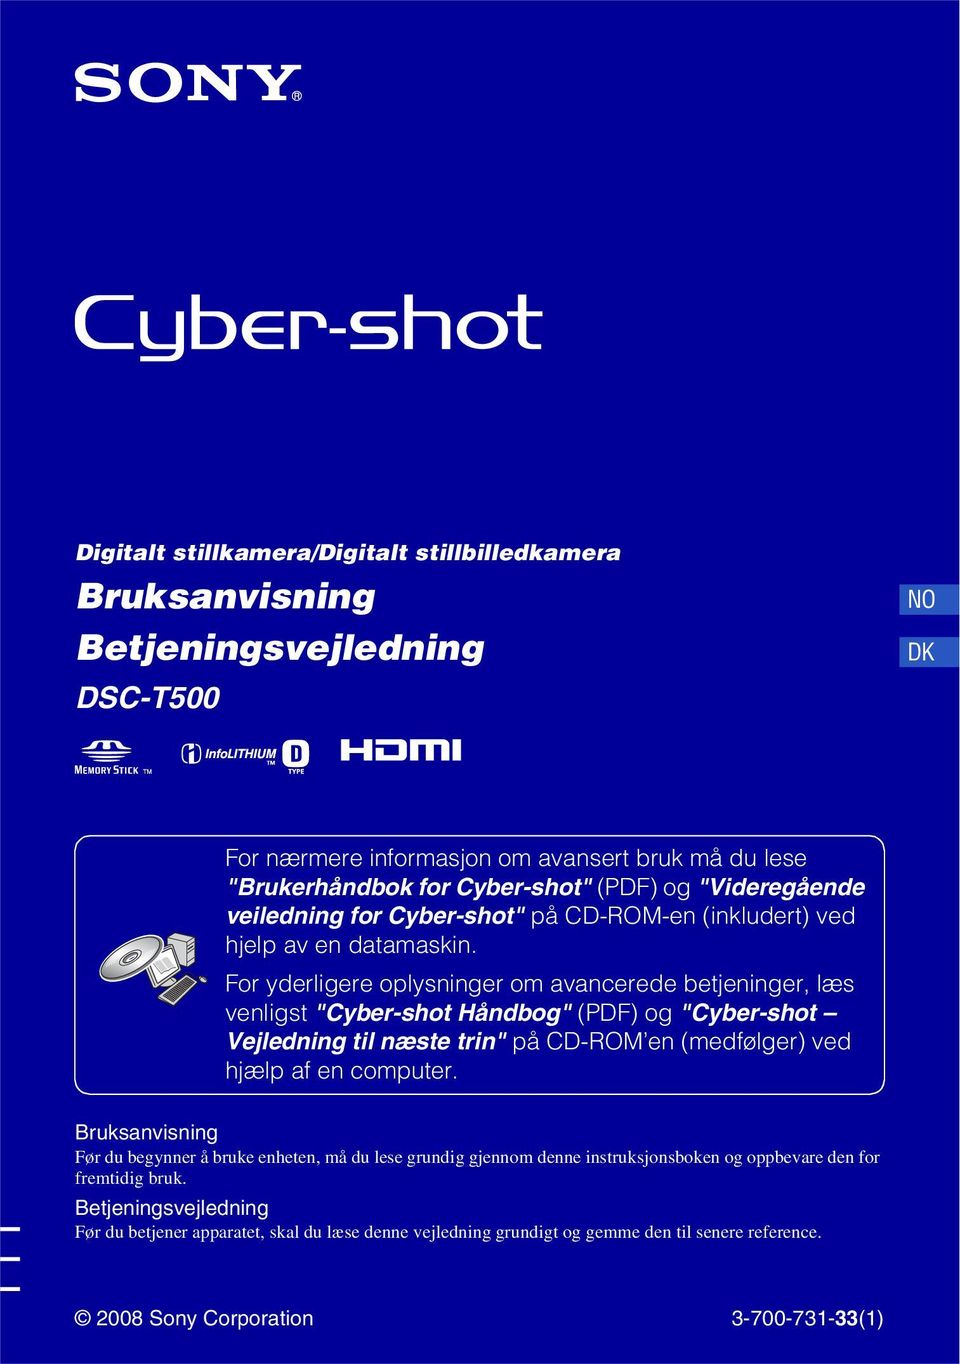 For yderligere oplysninger om avancerede betjeninger, læs venligst "Cyber-shot Håndbog" (PDF) og "Cyber-shot Vejledning til næste trin" på CD-ROM en (medfølger) ved hjælp af en computer.